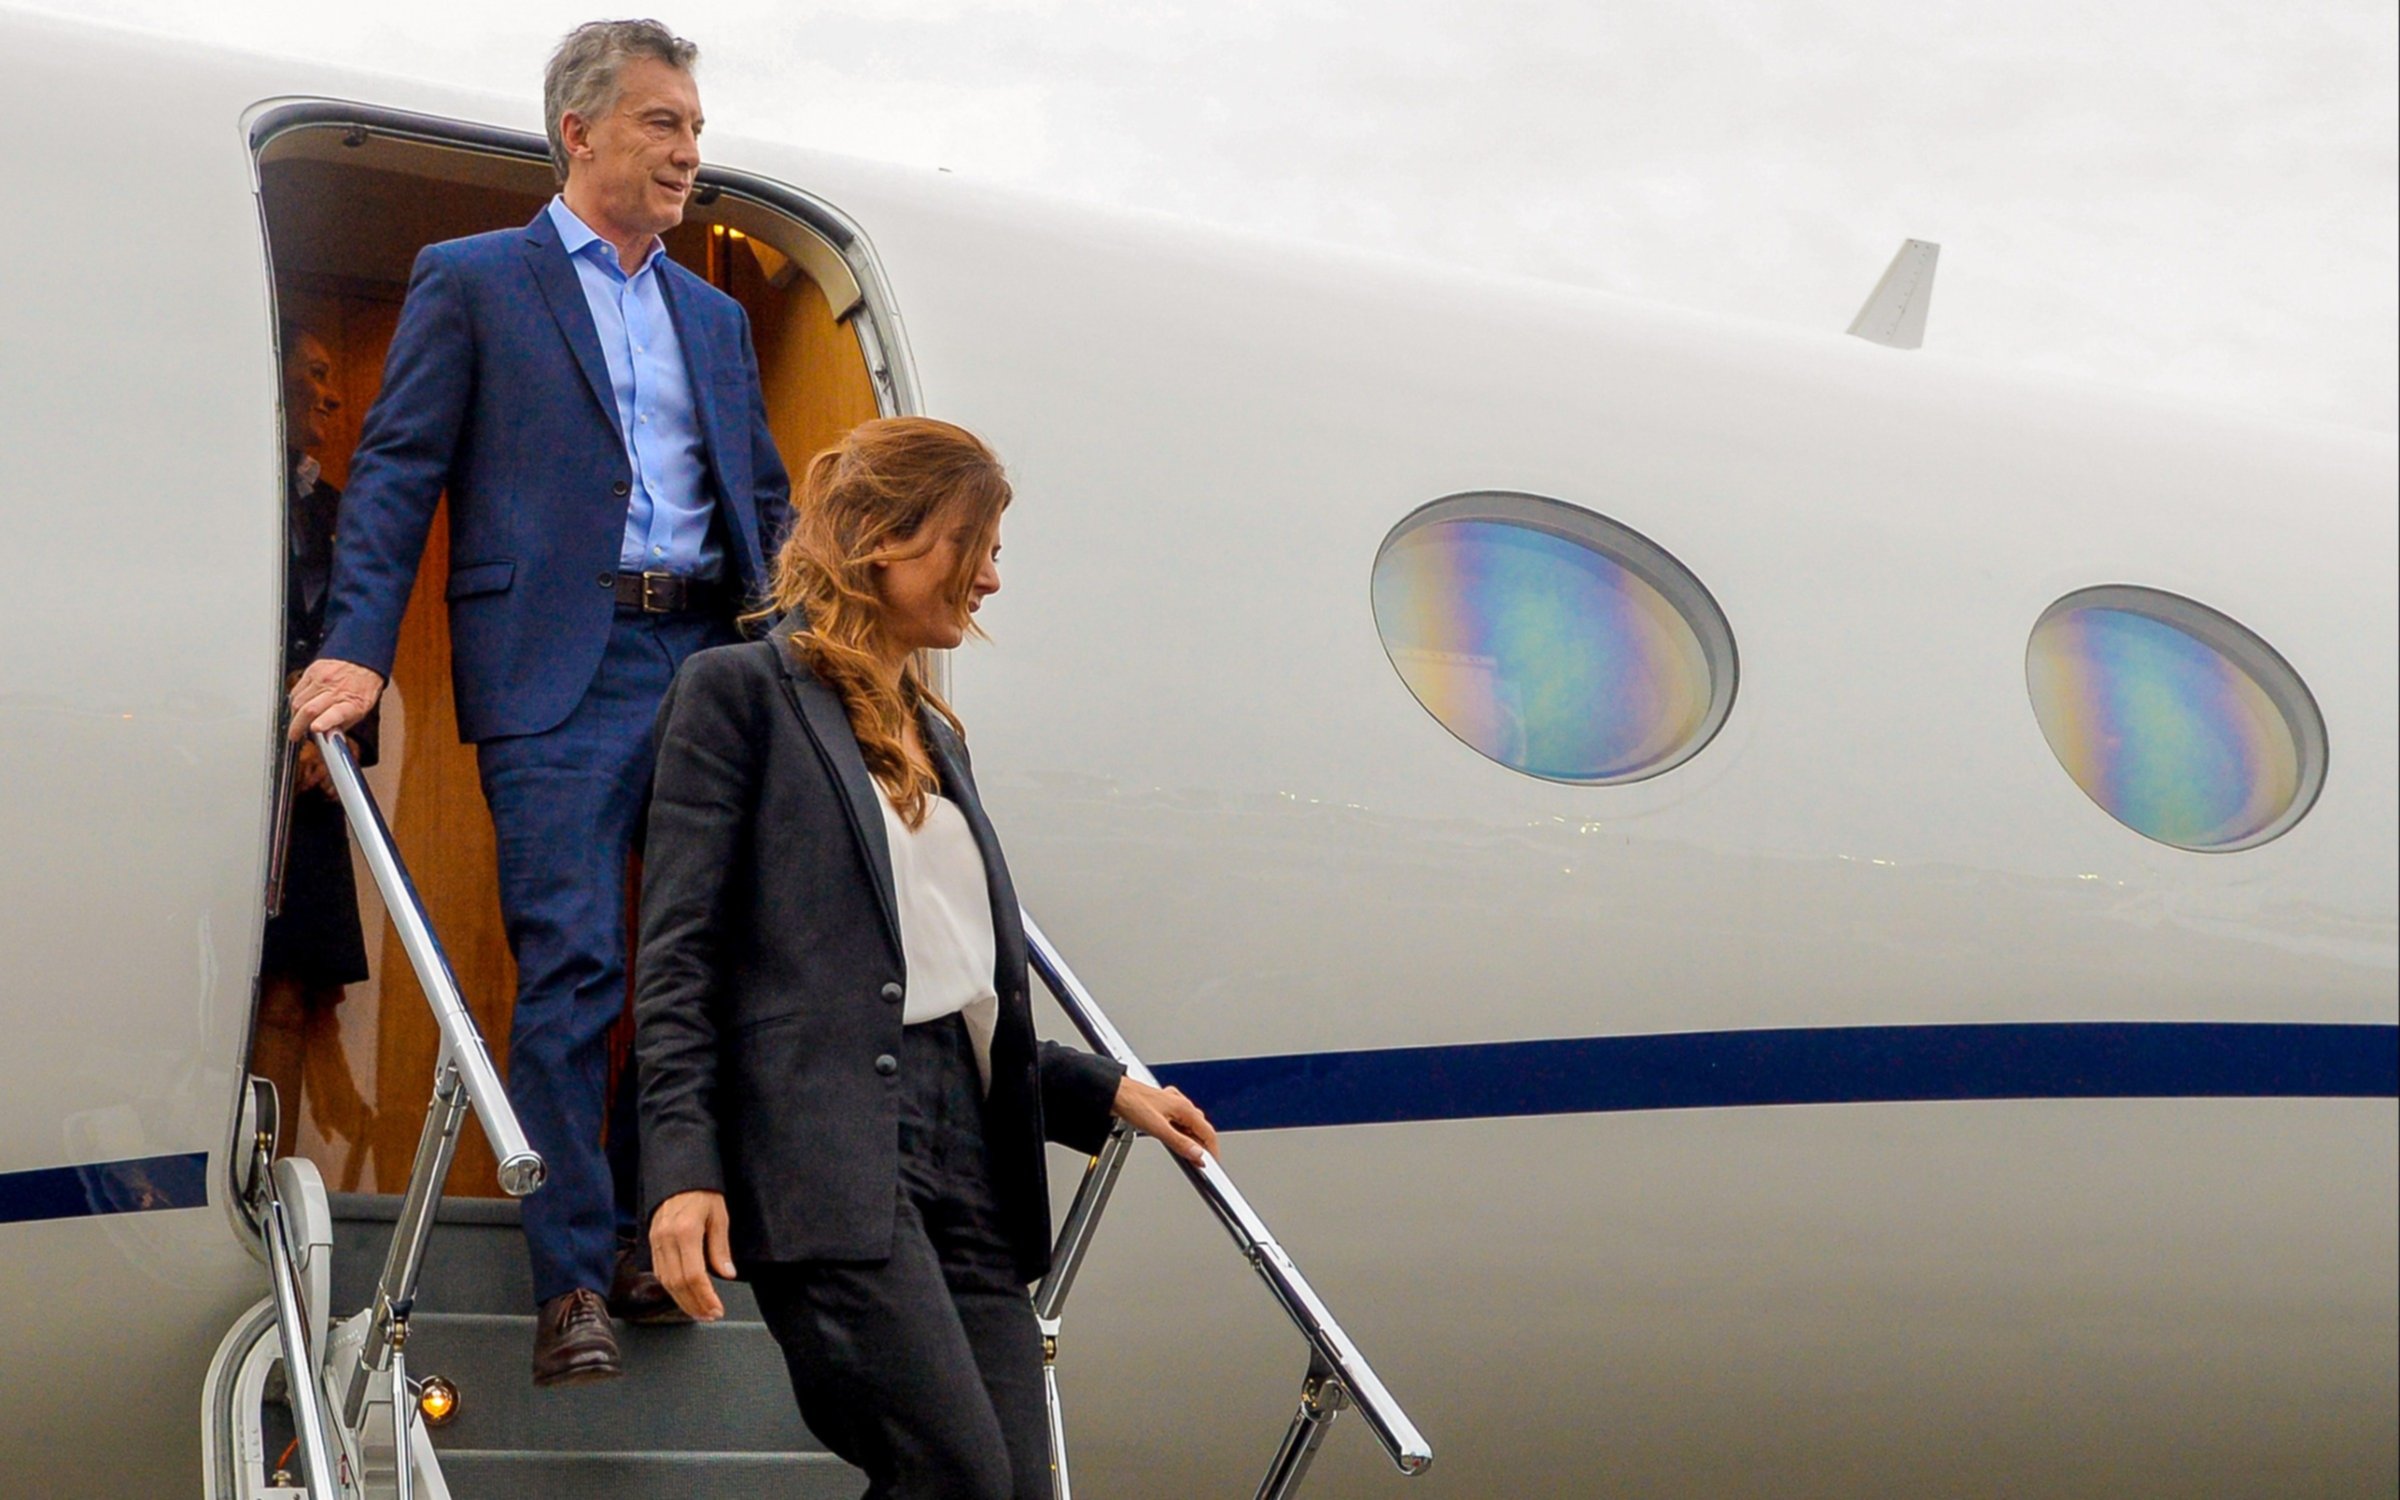  Macri llegó a Nueva York acompañado de Awada: el martes expondrá en la asamblea de la ONU